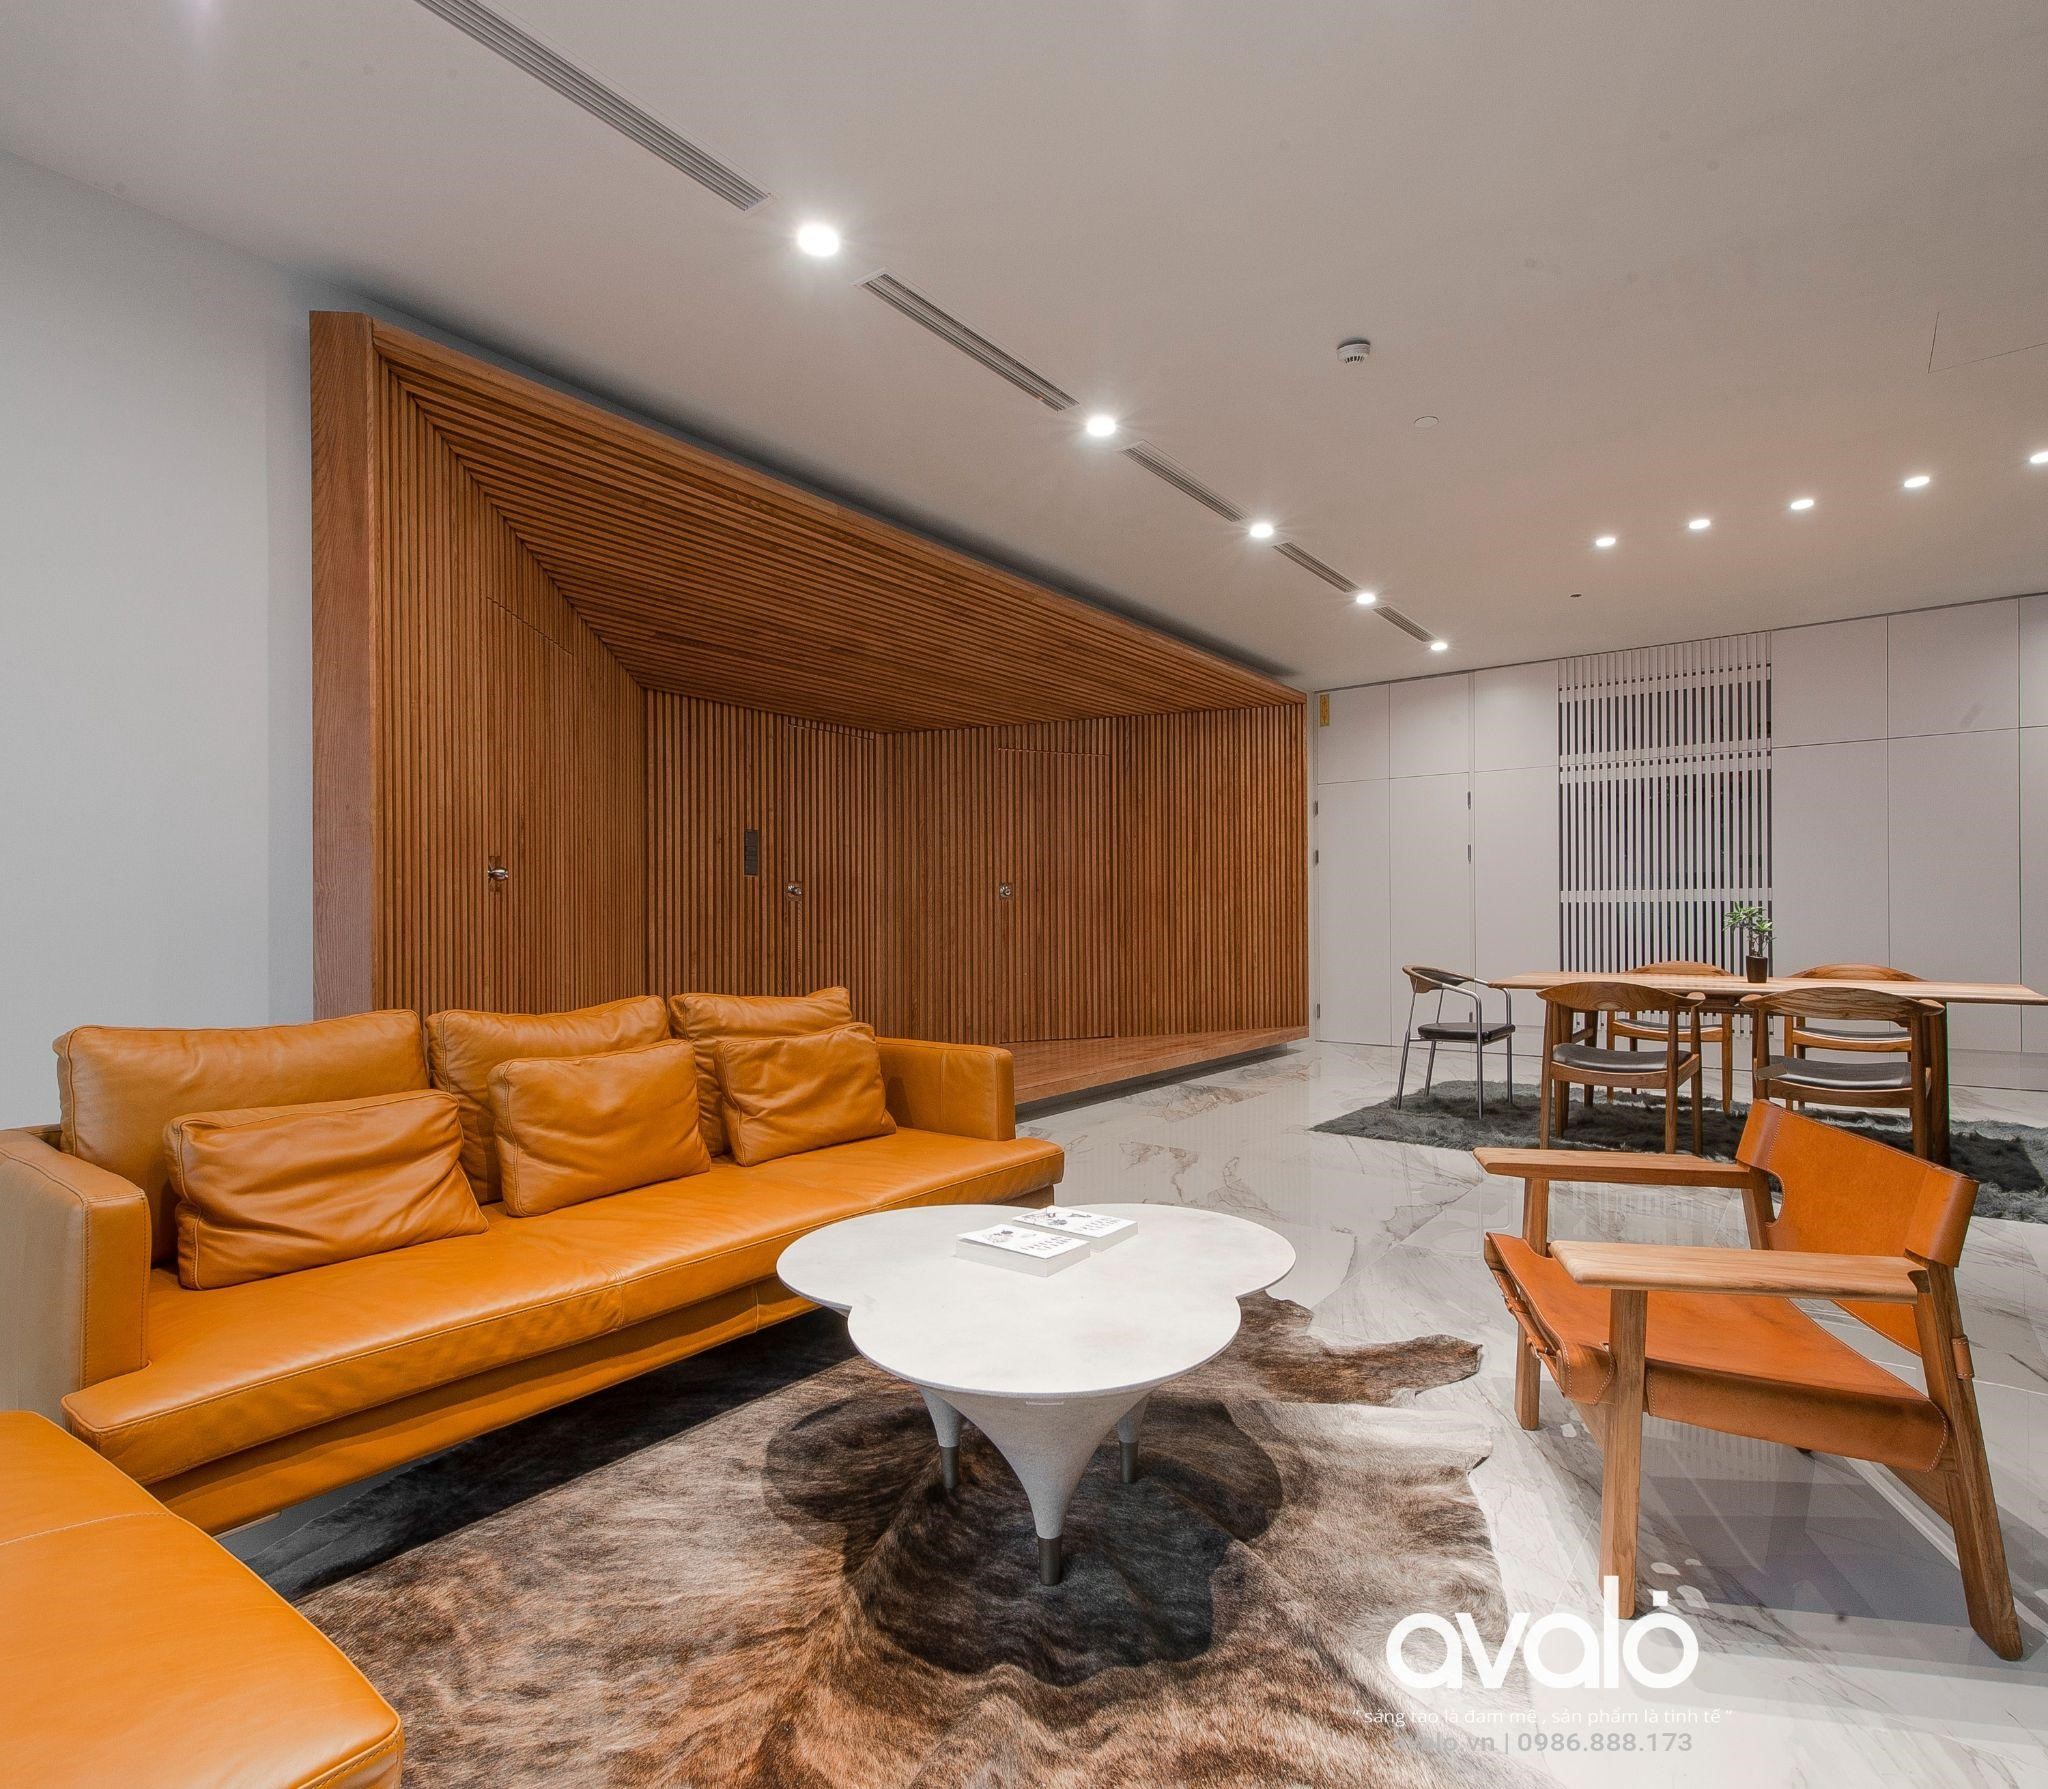 Lợi ích khi lựa chọn thiết kế nội thất tại Avalo